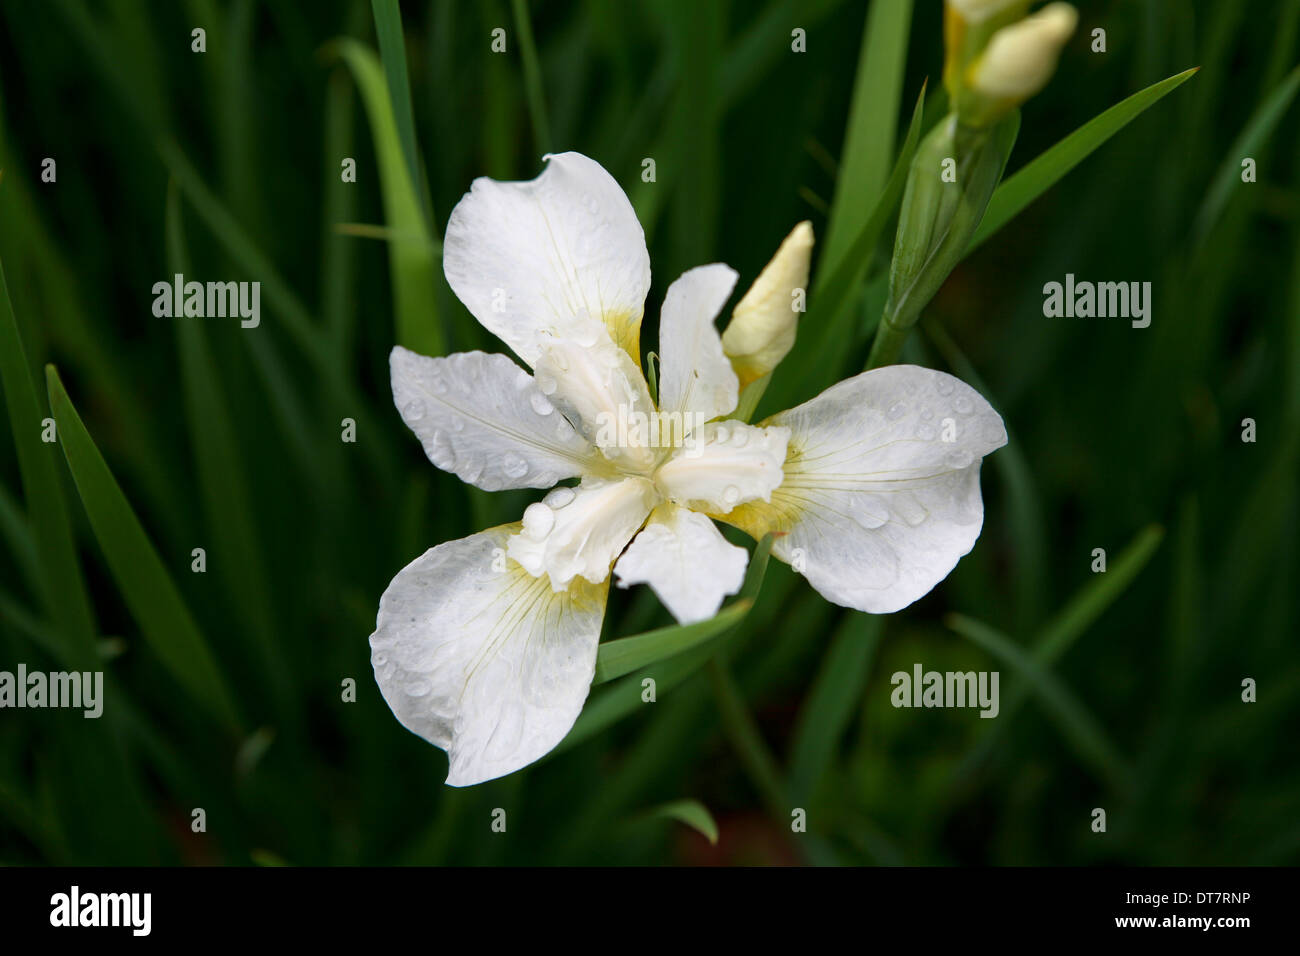 Iris 'White Swirl' / Siberian iris flower Stock Photo